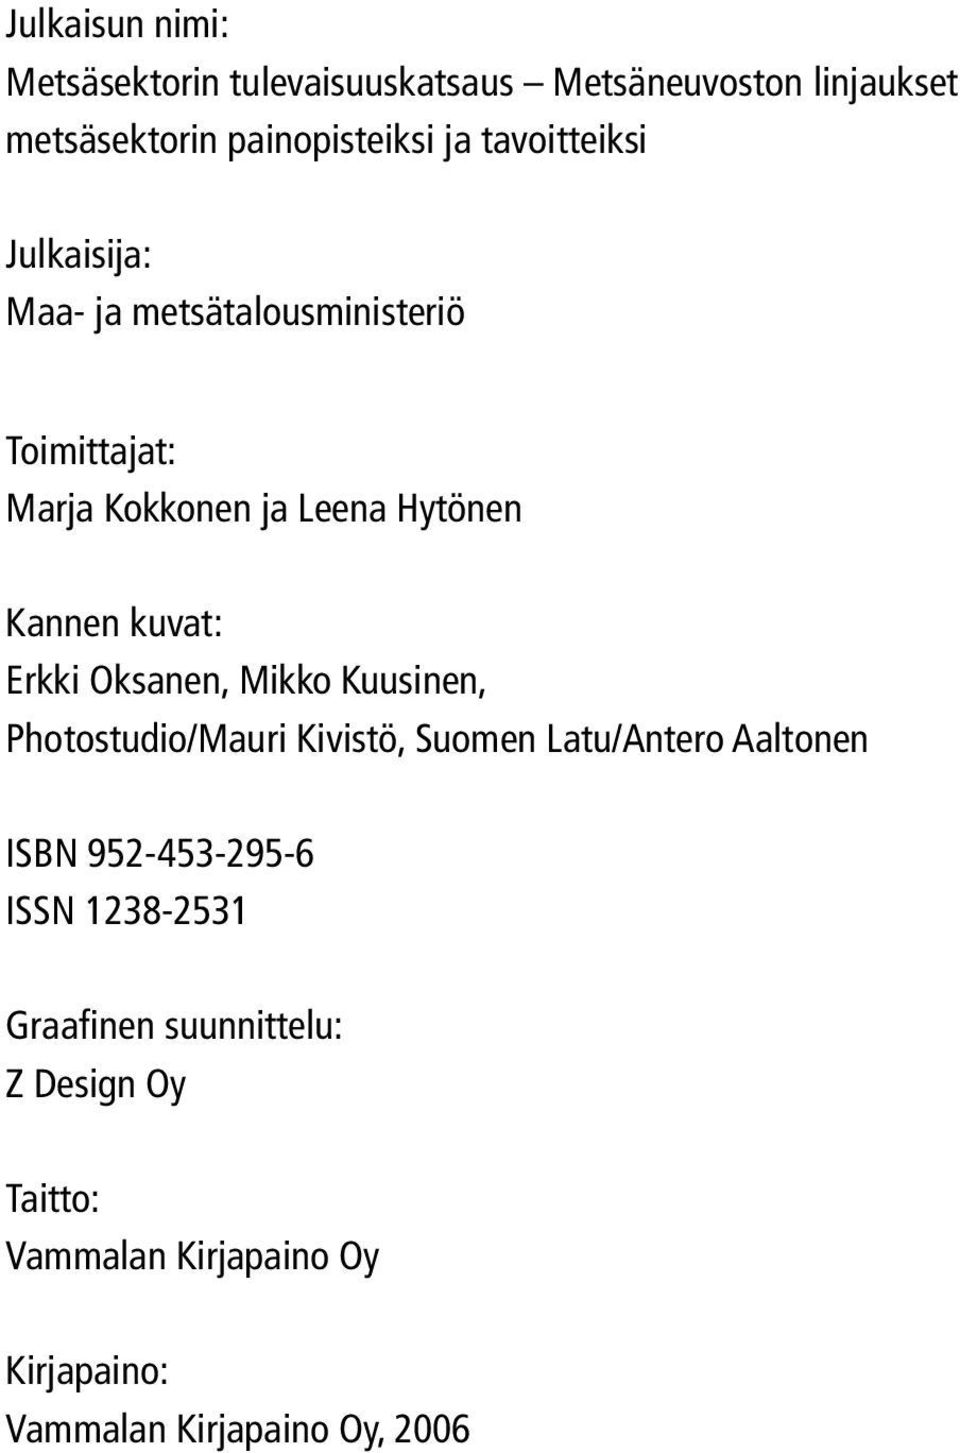 kuvat: Erkki Oksanen, Mikko Kuusinen, Photostudio/Mauri Kivistö, Suomen Latu/Antero Aaltonen ISBN 952-453-295-6